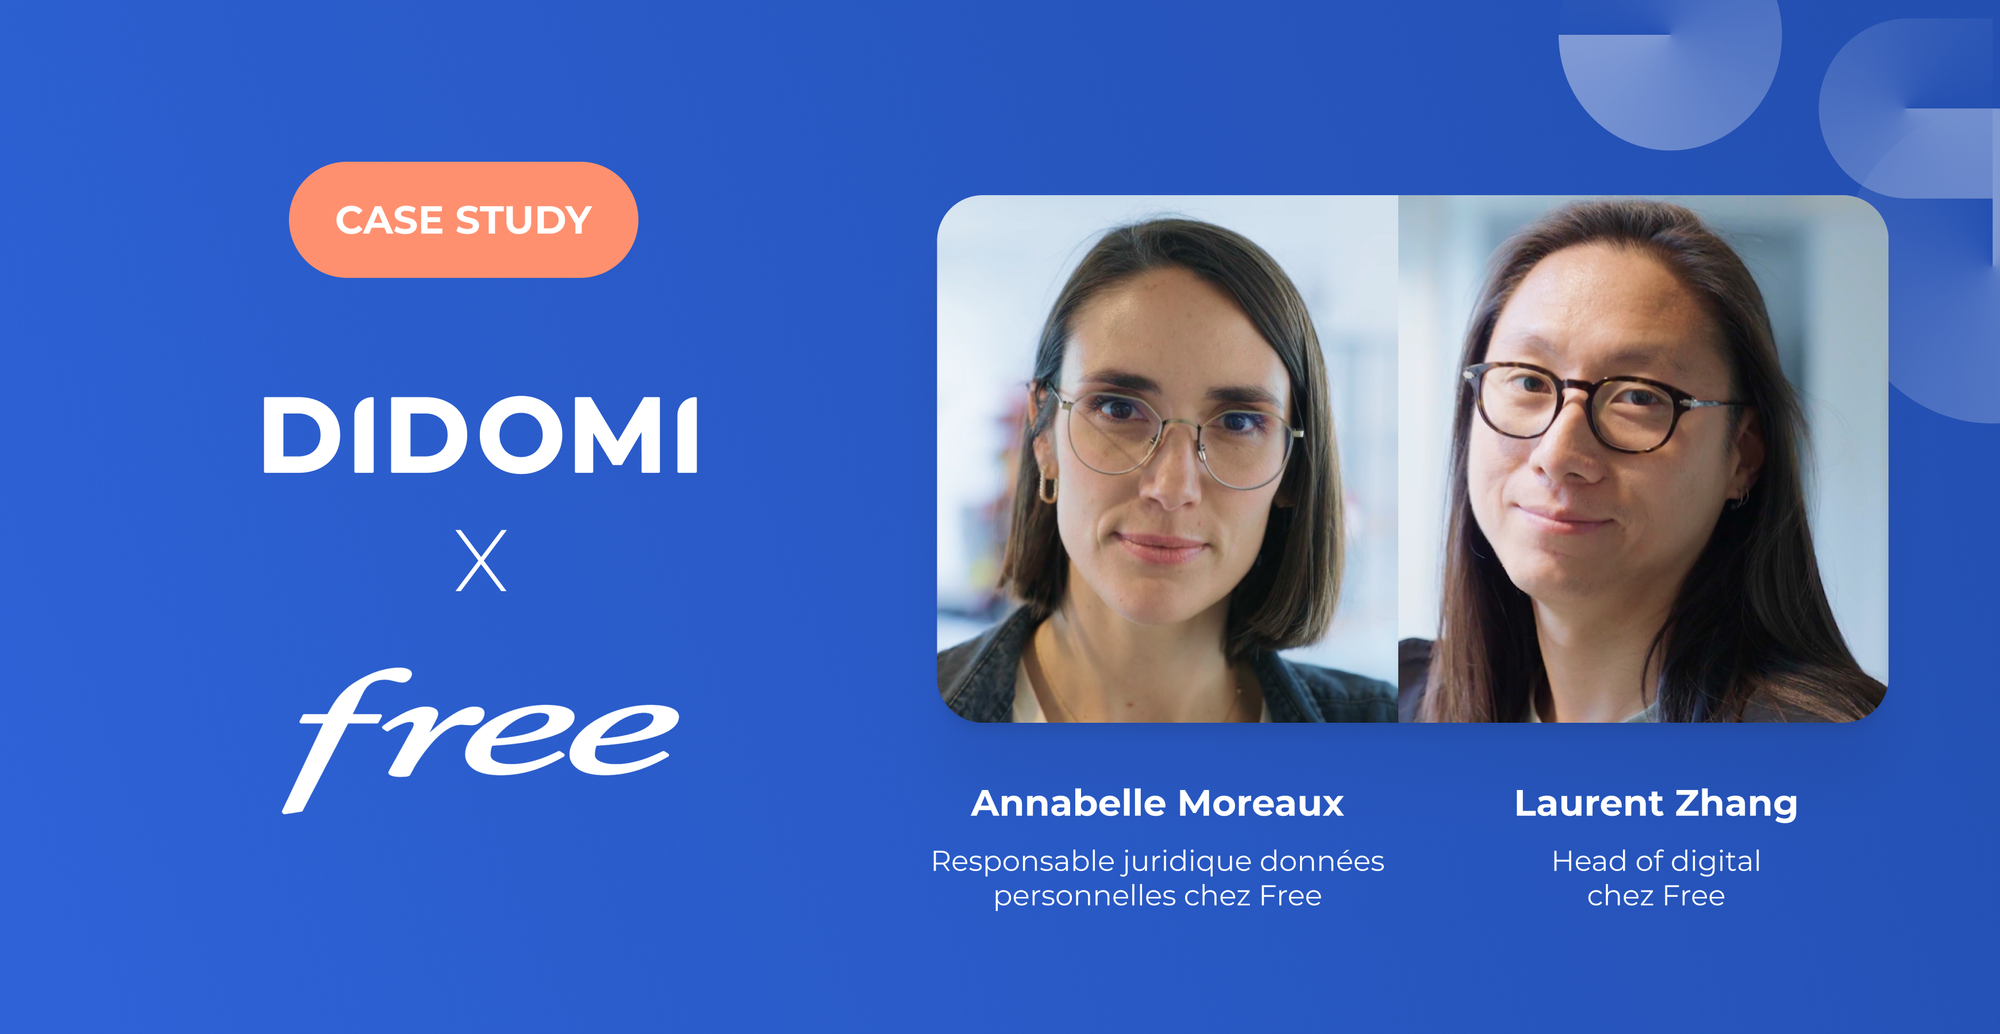 Pourquoi Free a choisi Didomi pour simplifier son expérience utilisateur ?